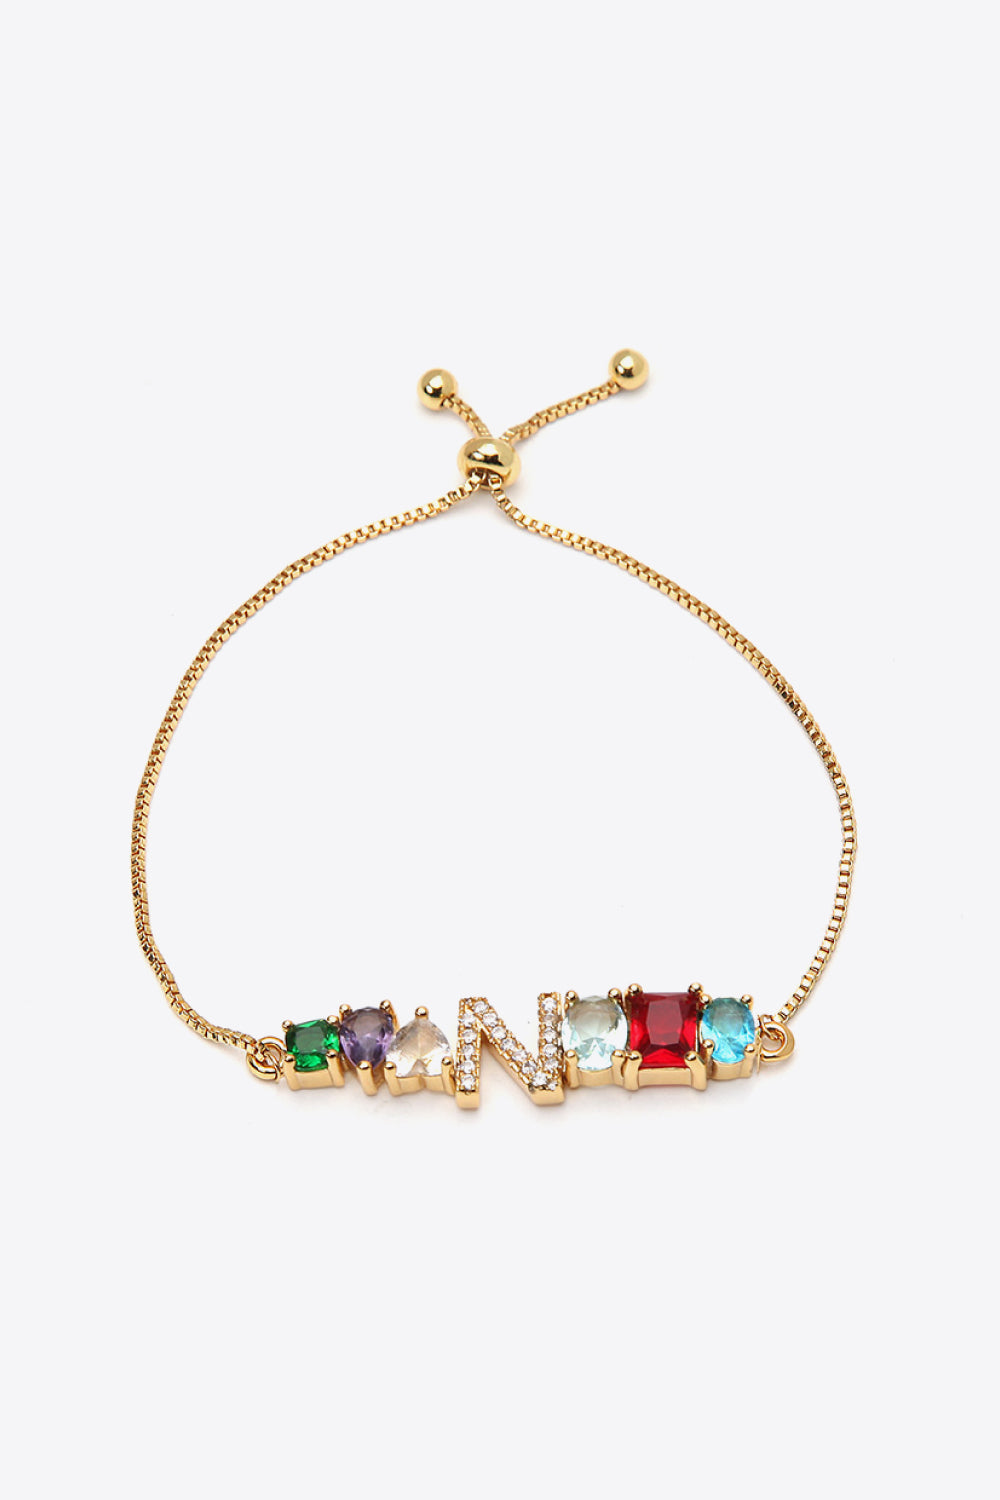 K to T Zircon Bracelet - N / One Size - Women’s Jewelry - Bracelets - 10 - 2024